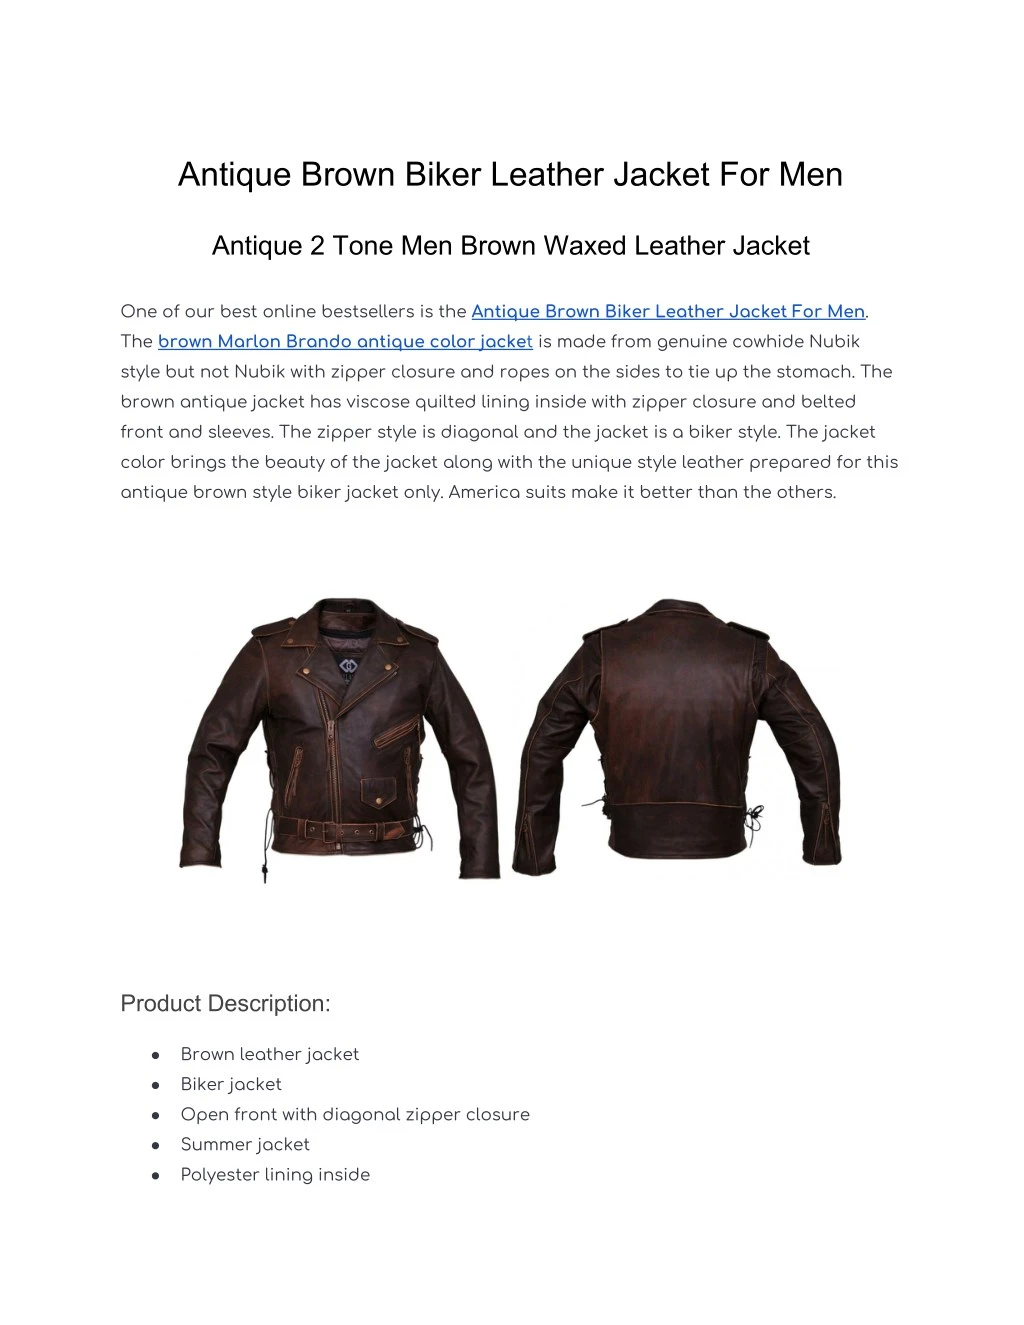 antique brown biker leather jacket for men